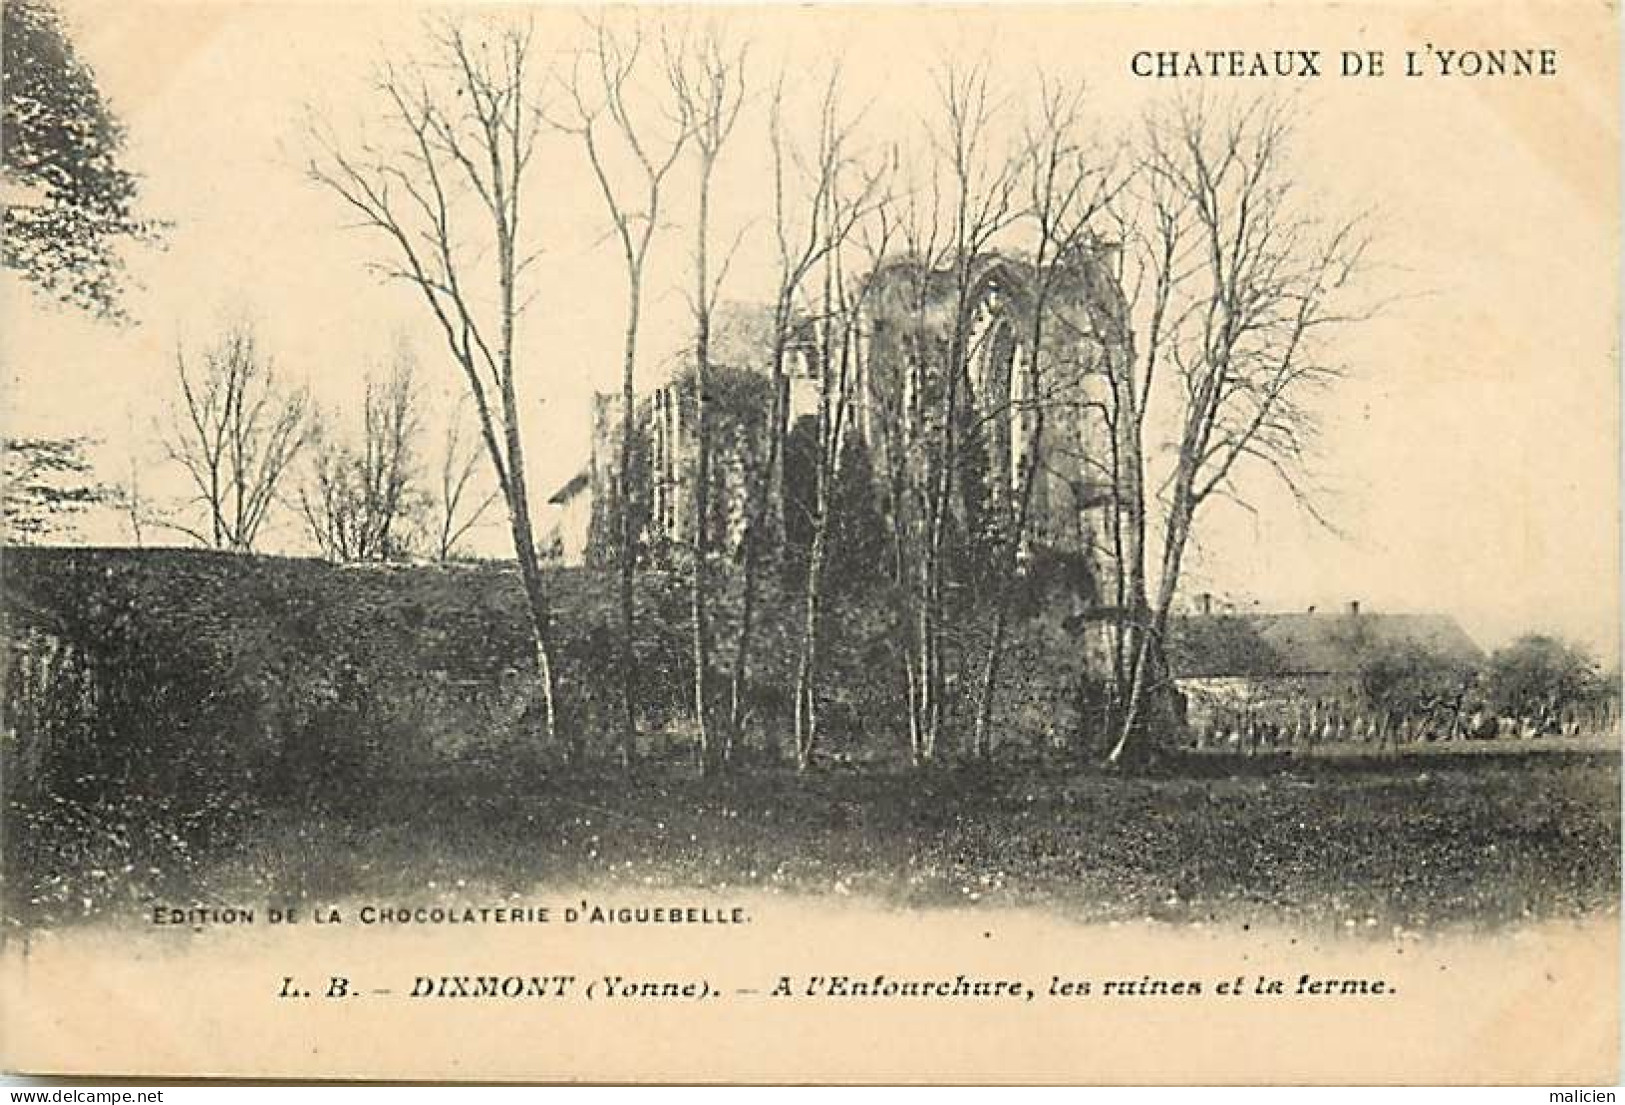 - Yonne - Ref-A680- Dixmont - à L Embouchure- Ruines Et Ferme - Chateau - Chateaux De L Yonne - Edition Aiguebelle - - Dixmont